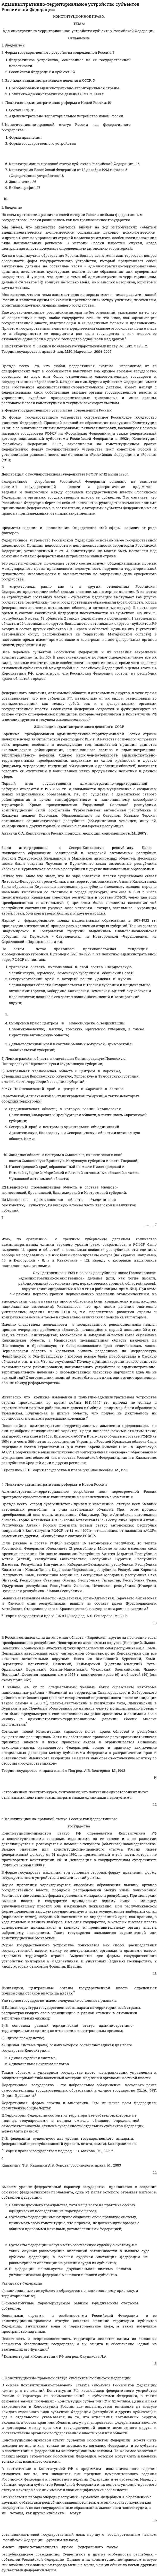 Административно-территориальное устройство субъектов Российской Федерации. 2